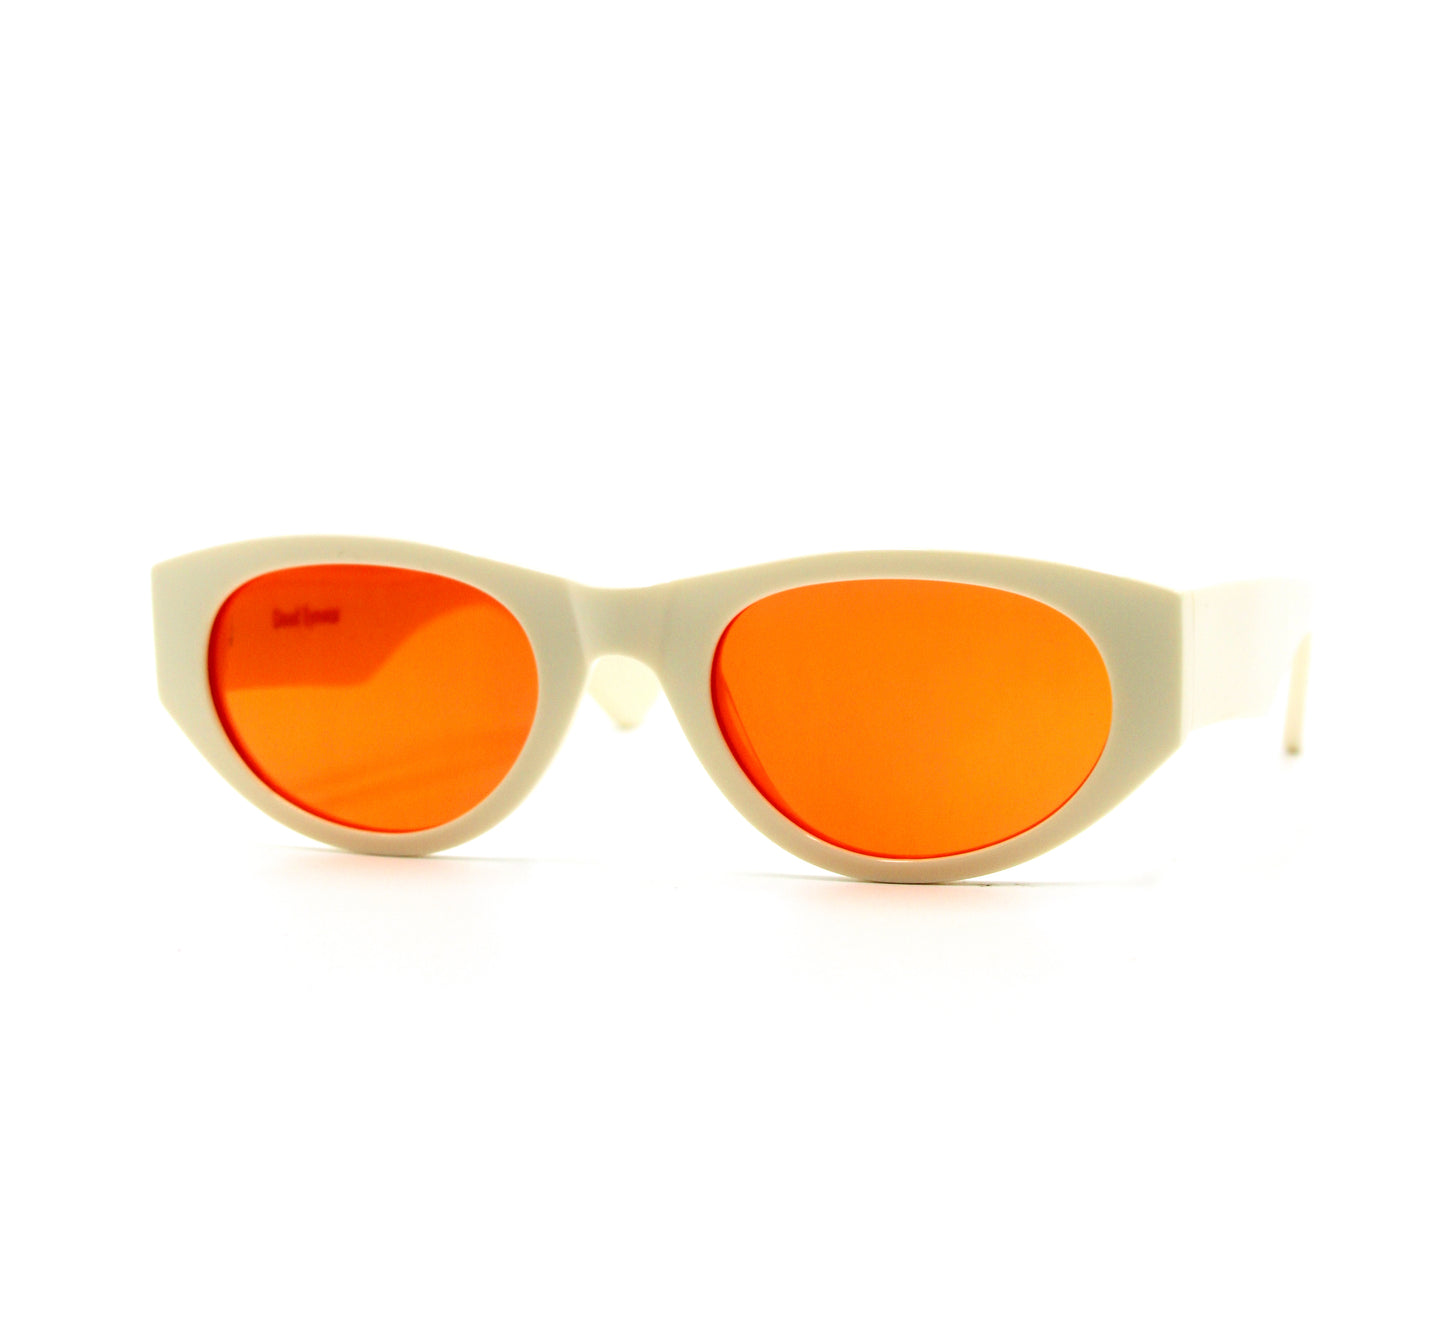 349 Originals Creme Frame with Unique Orange Lenses